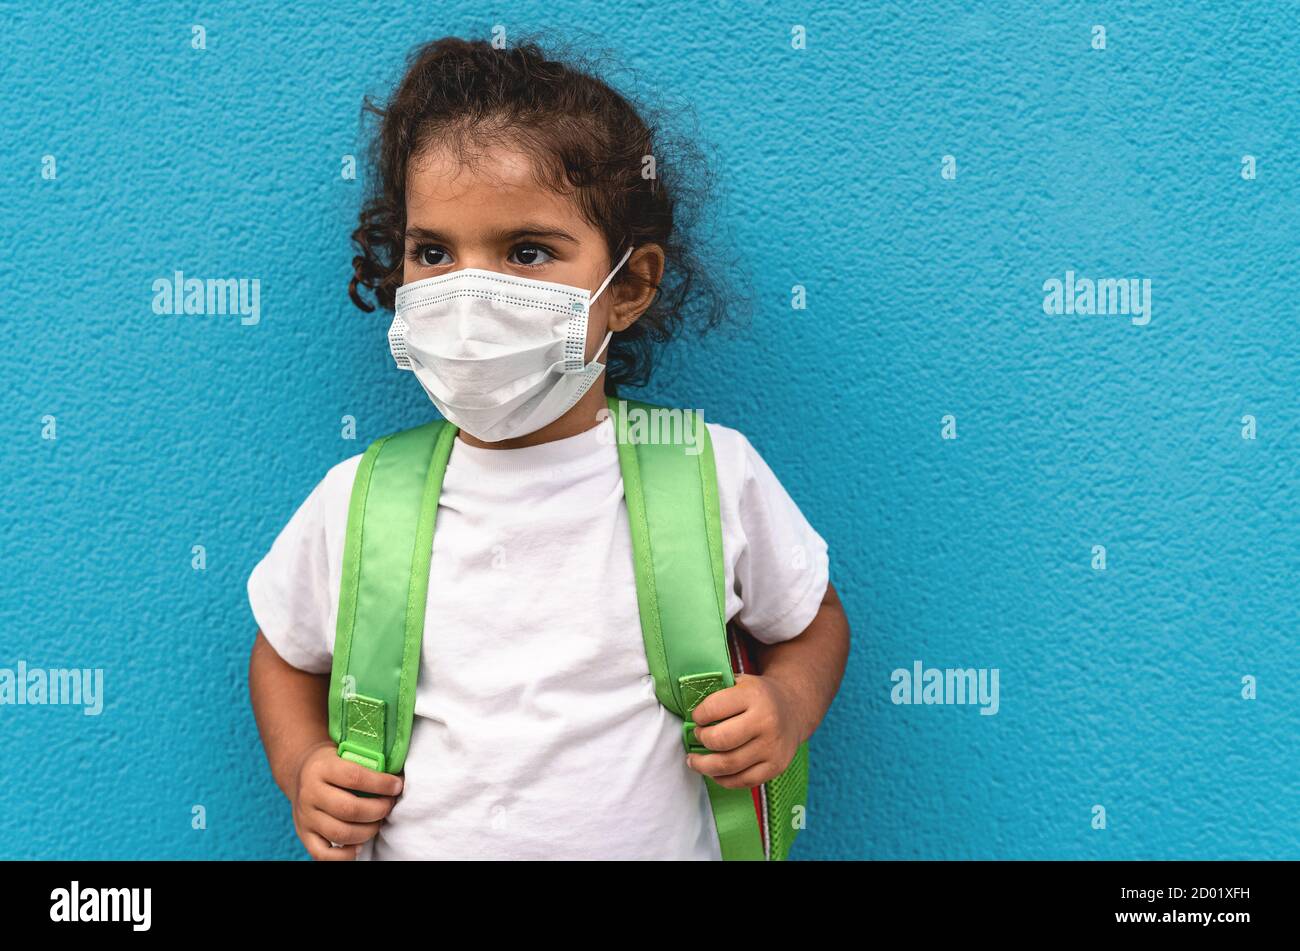 Enfant portant un masque de protection du visage qui retourne à l'école pendant pandémie de virus corona - concept de soins de santé et d'éducation Banque D'Images